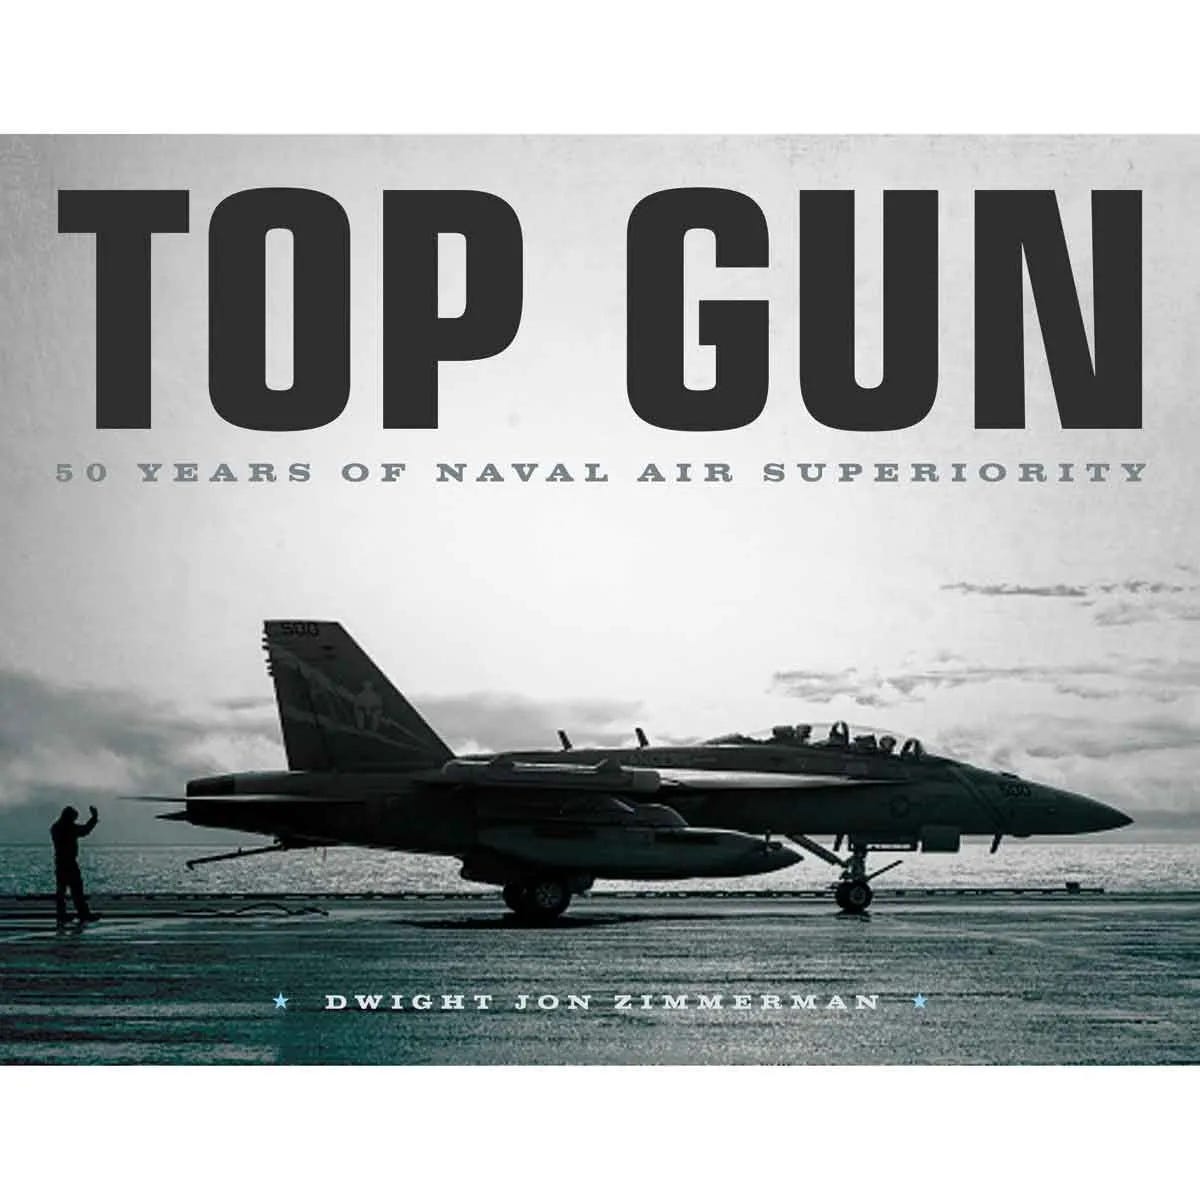 Top Gun: 50 Years of Naval Air Superiority Book